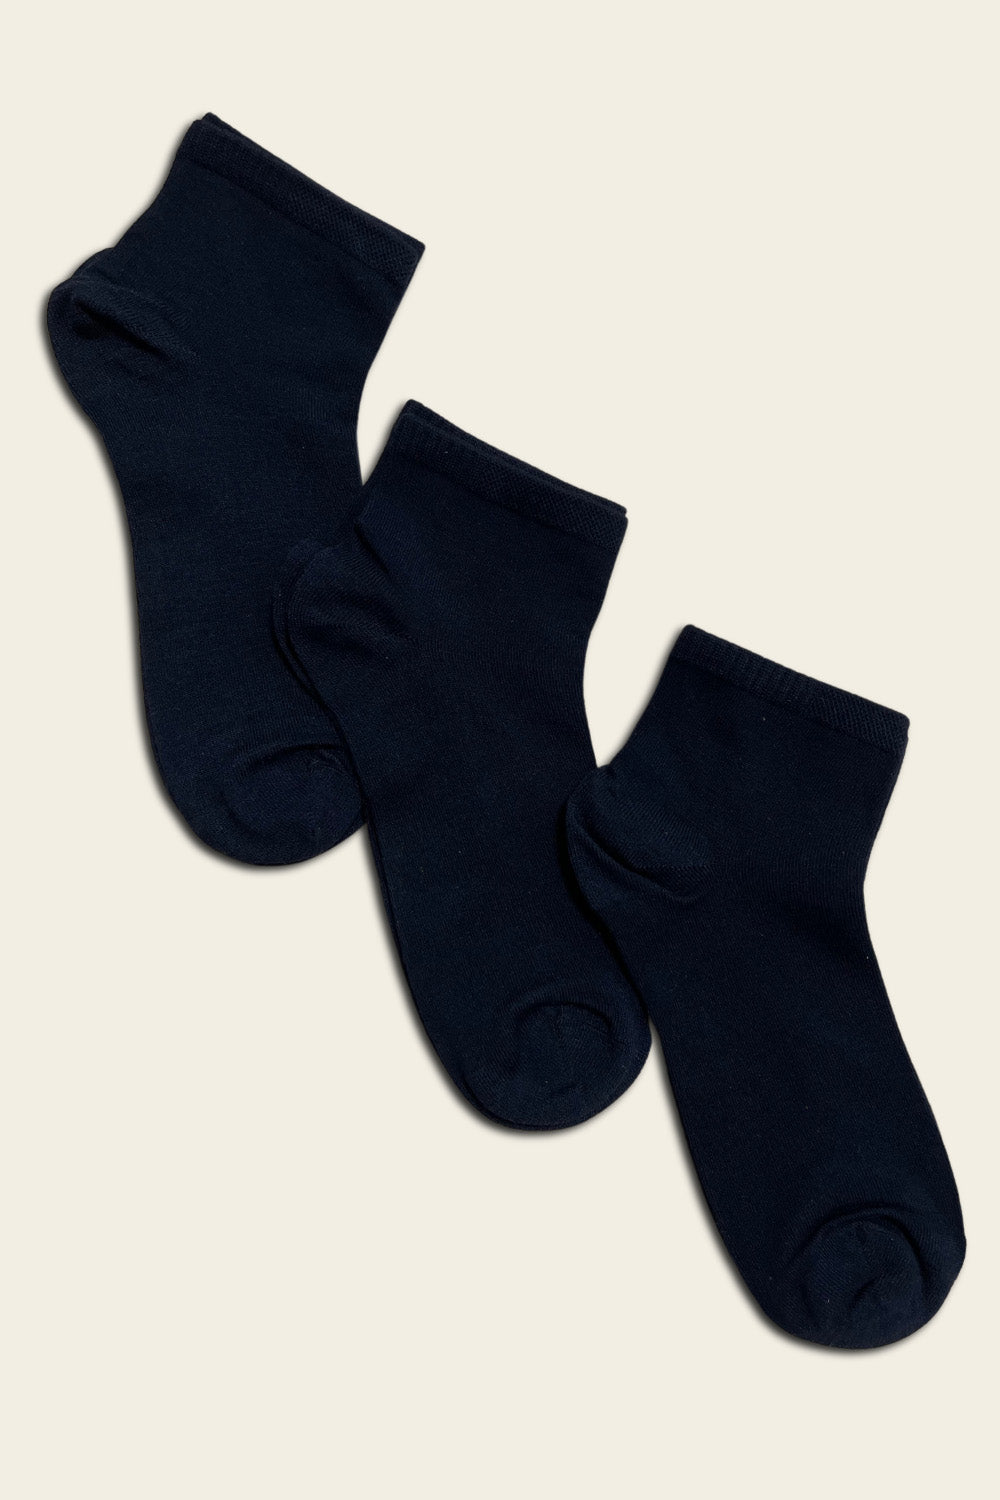 Calcetines bajos de bambú azul oscuro sin costuras - 6 pares